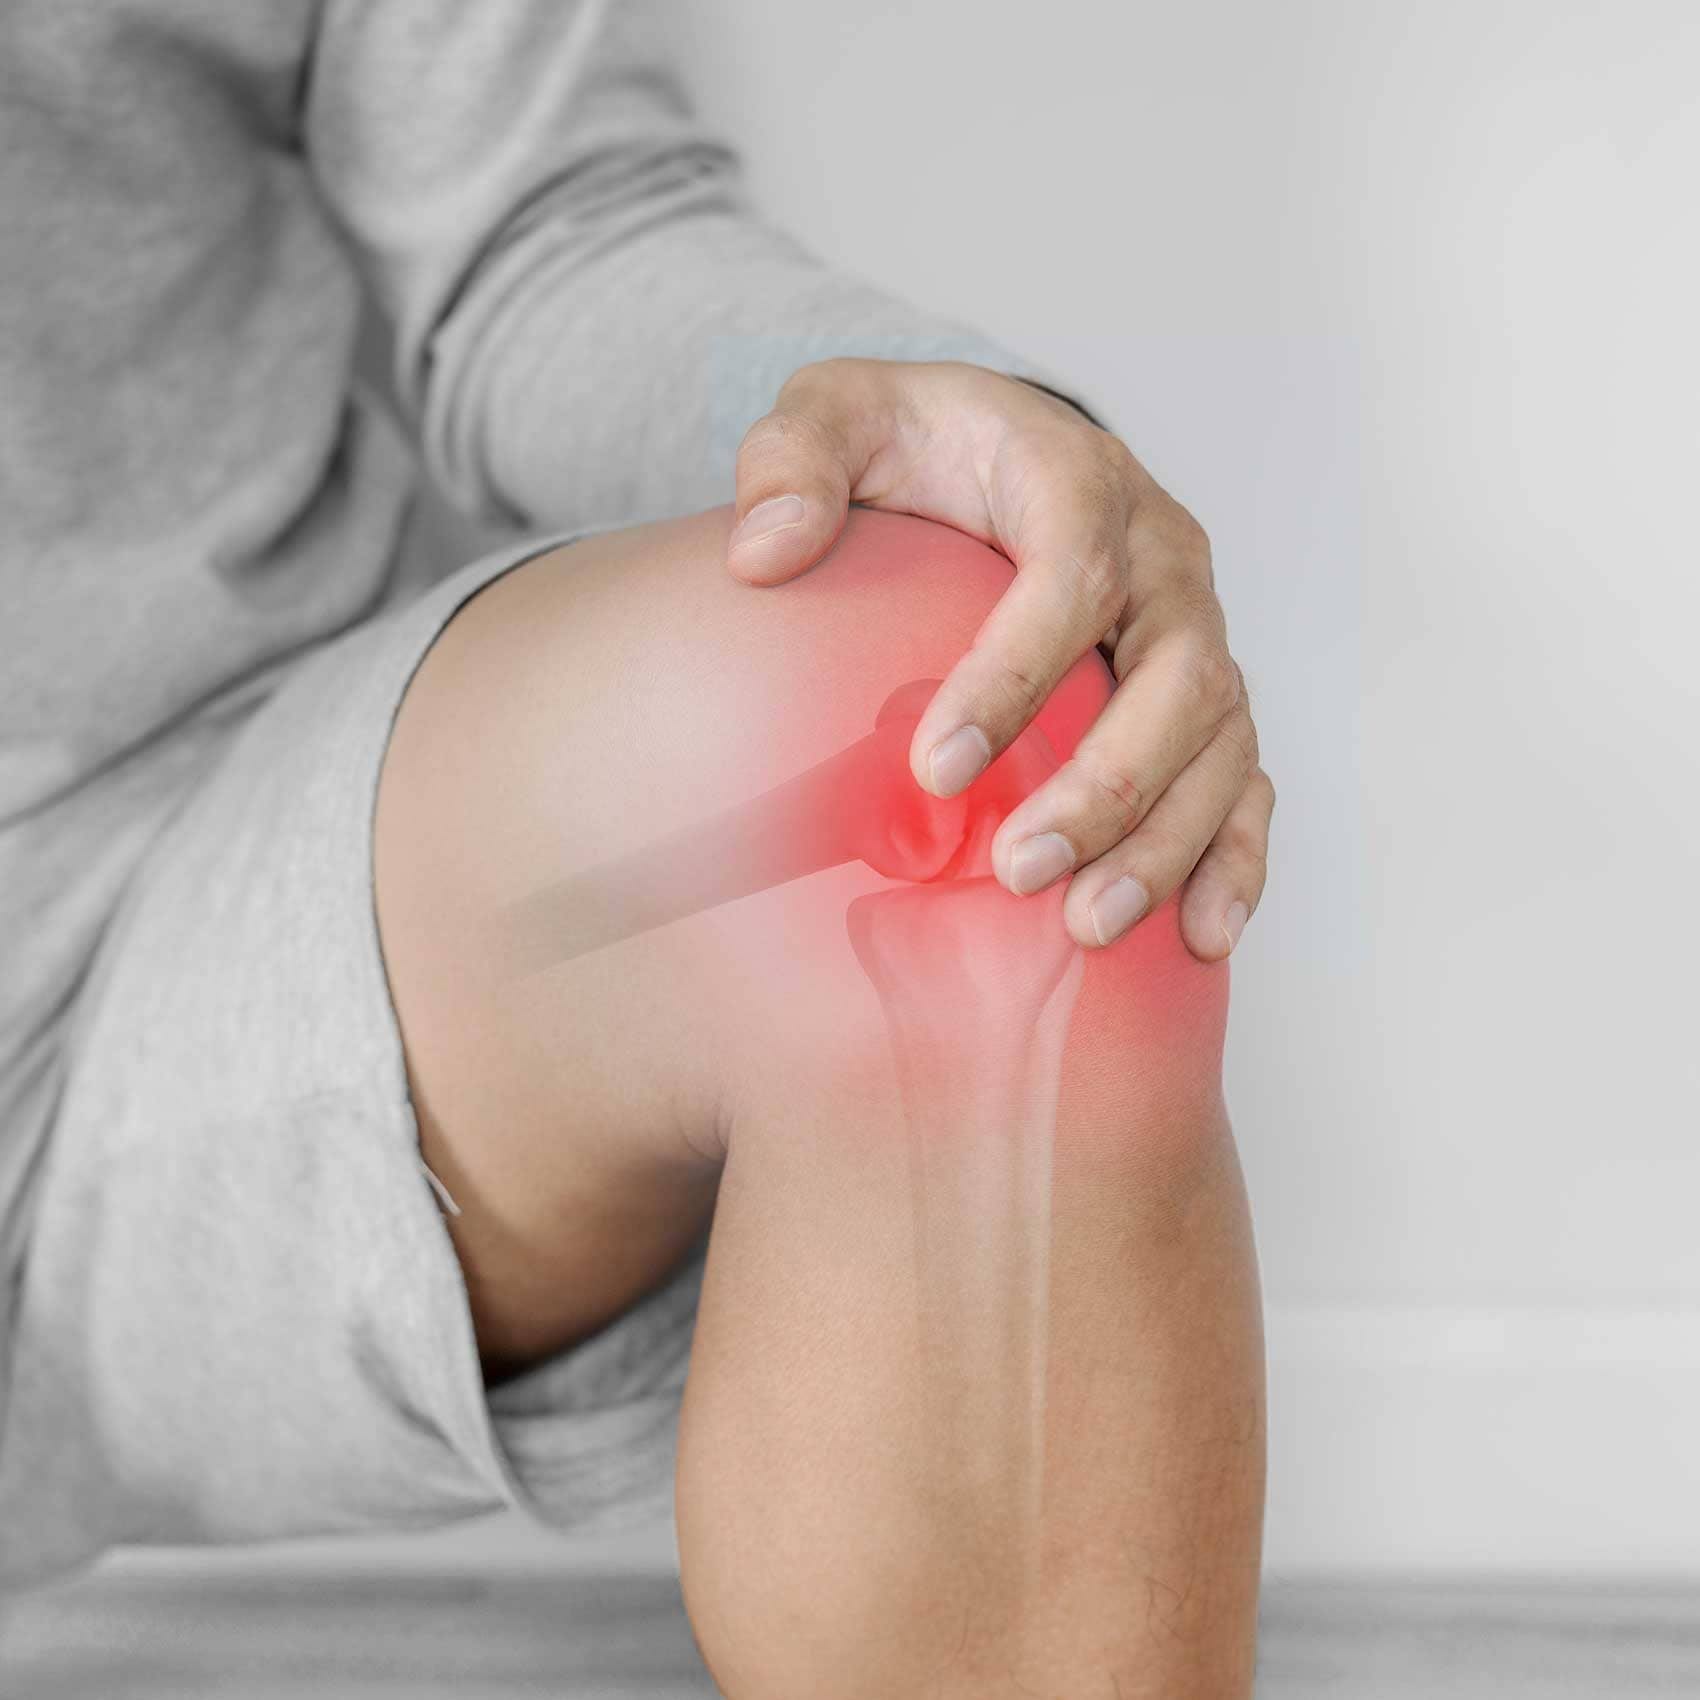 ameliorarea rapidă a durerilor de genunchi